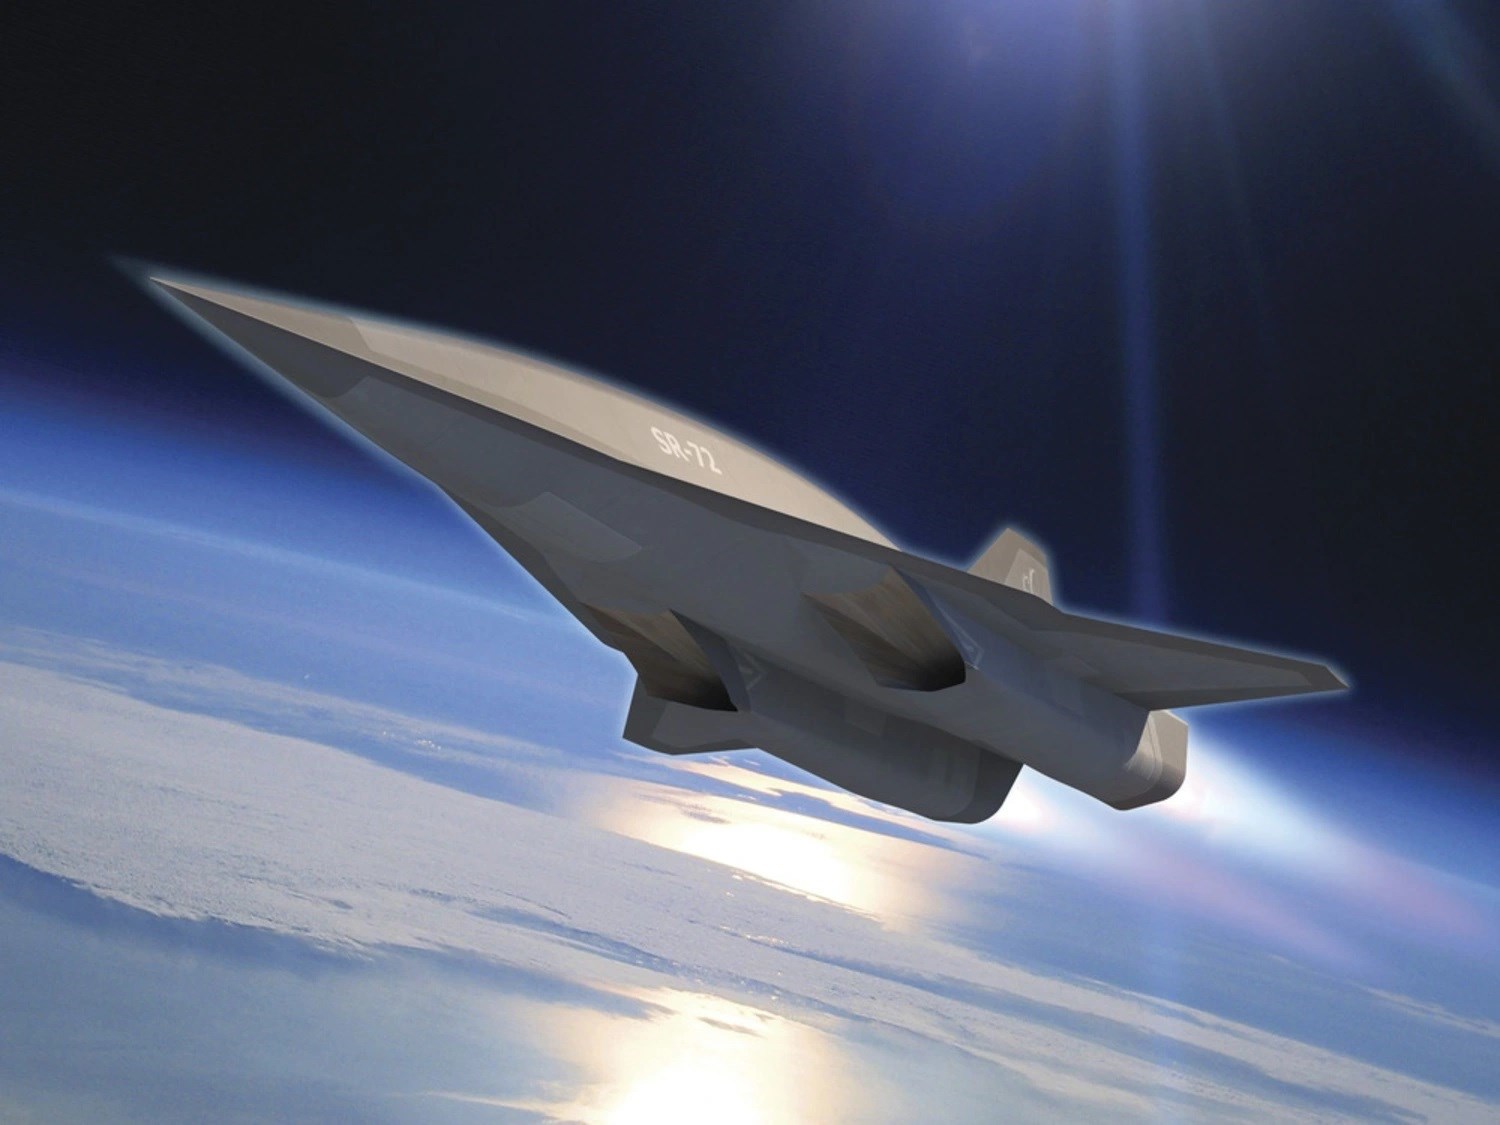 ABD'nin çok gizli insansız SR-72 hipersonik jeti 2025'te uçabilir